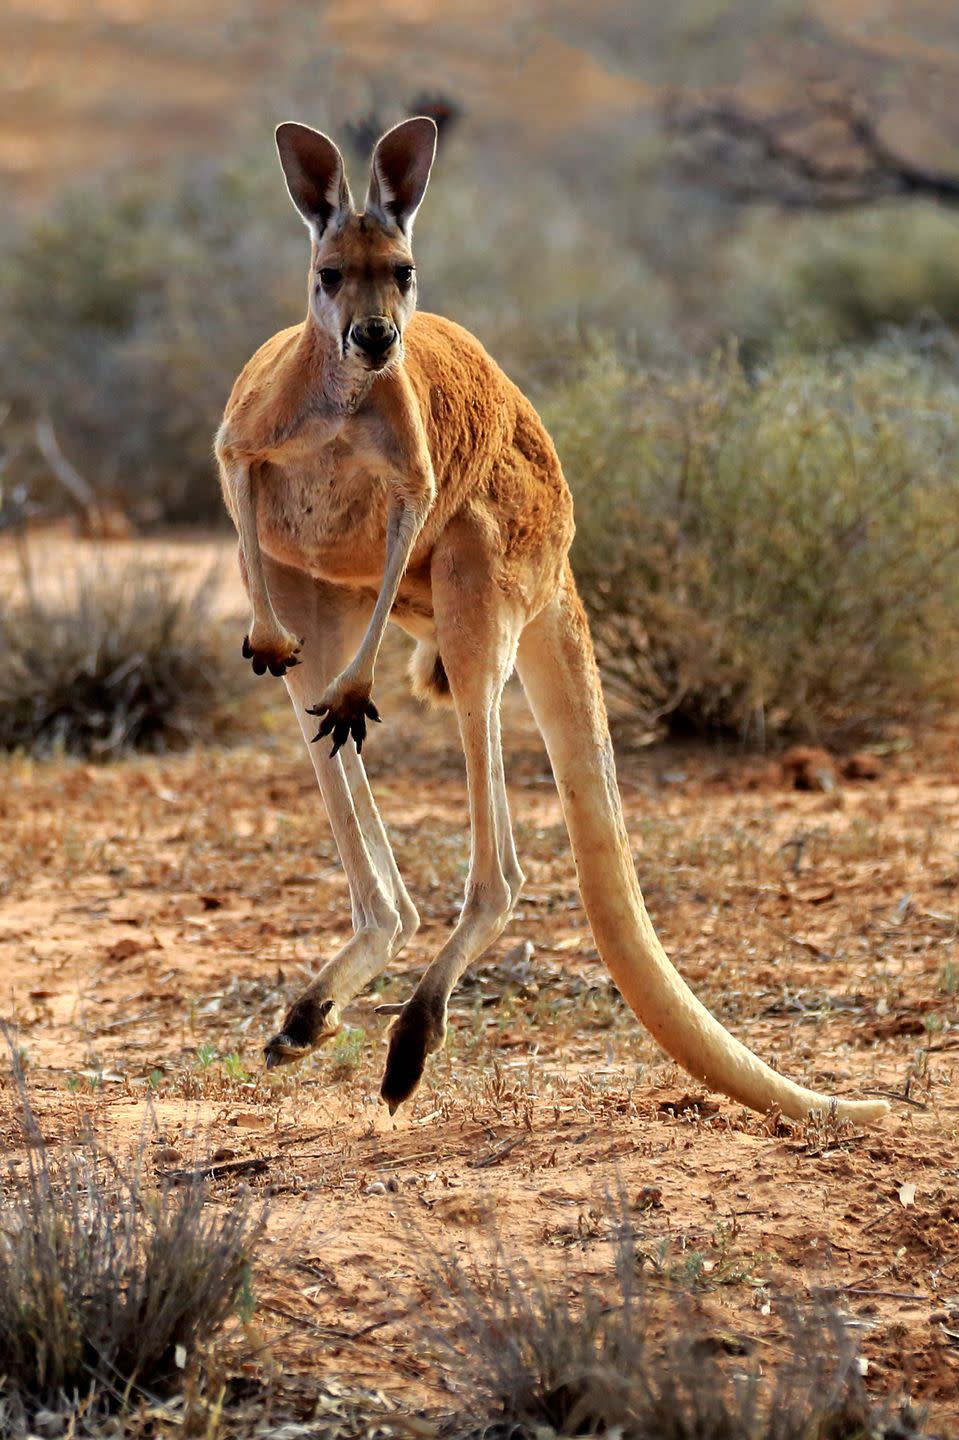 7. Kangaroos can jump crazy far.